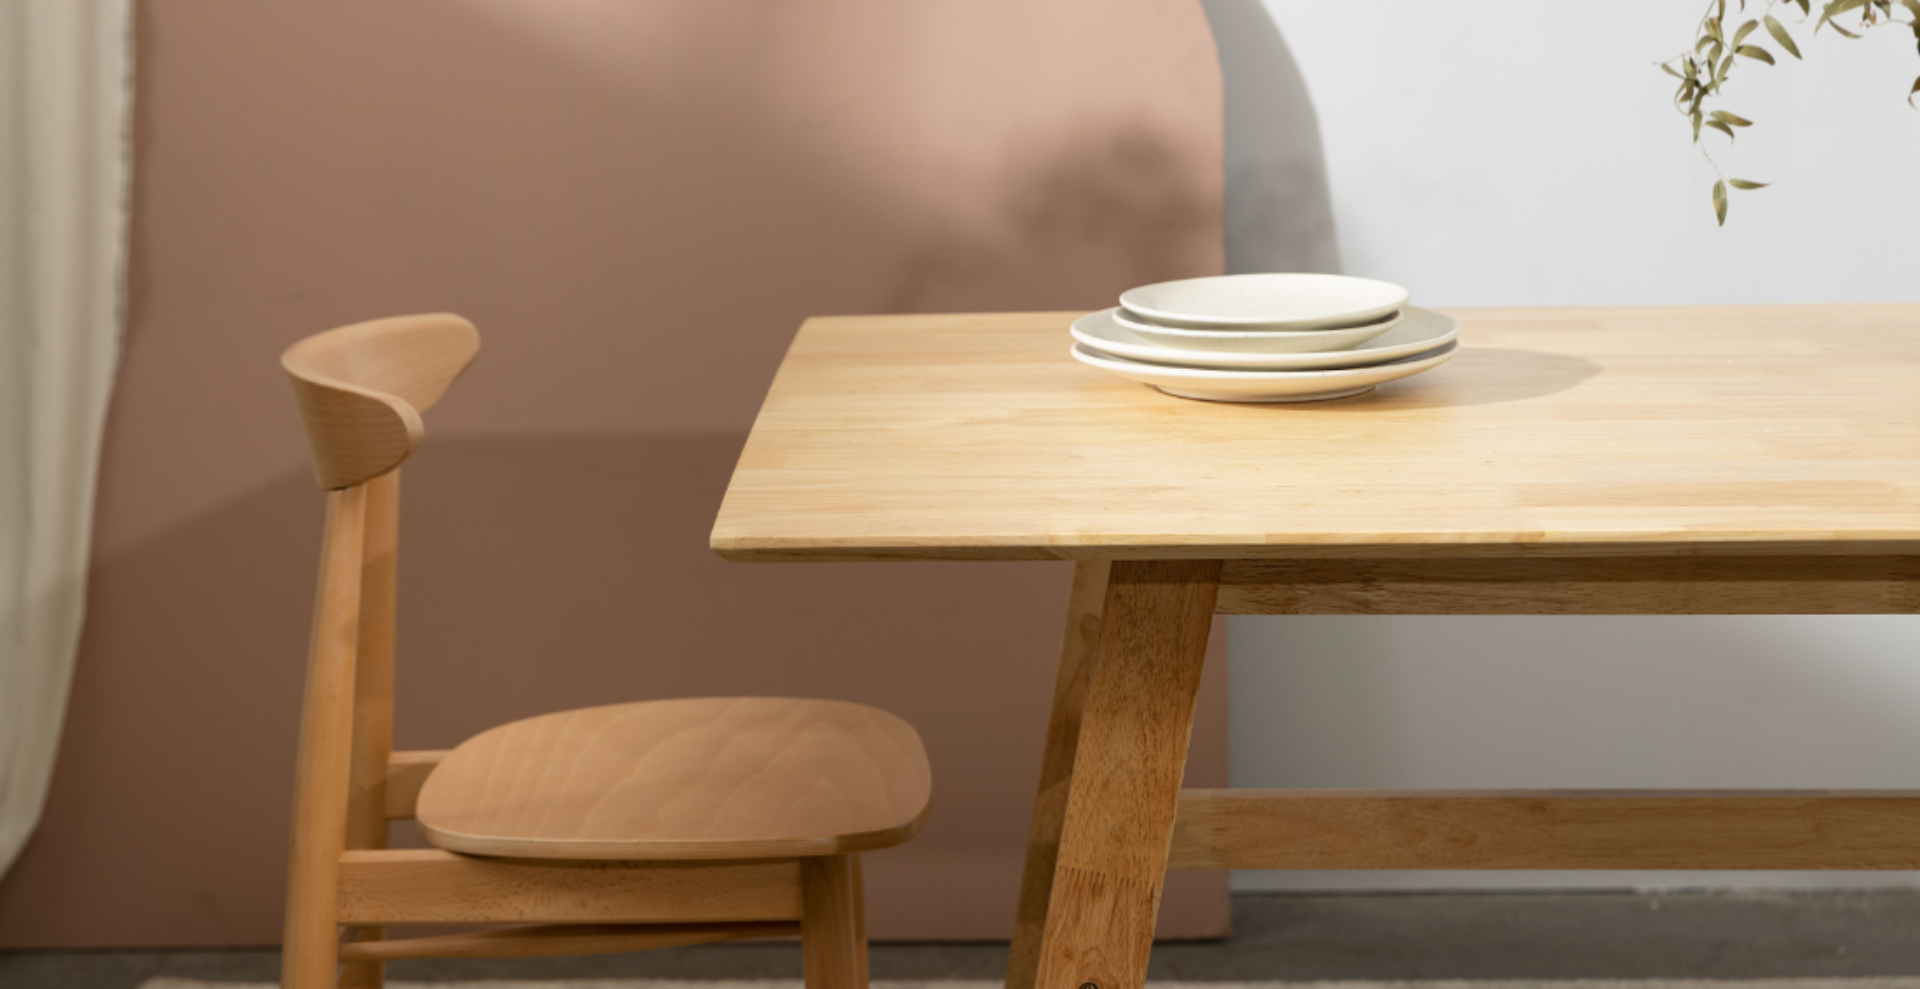 Stół oraz krzesło w kolorze jasnego drewna. na stole ułożone talerze w beżowym kolorze.